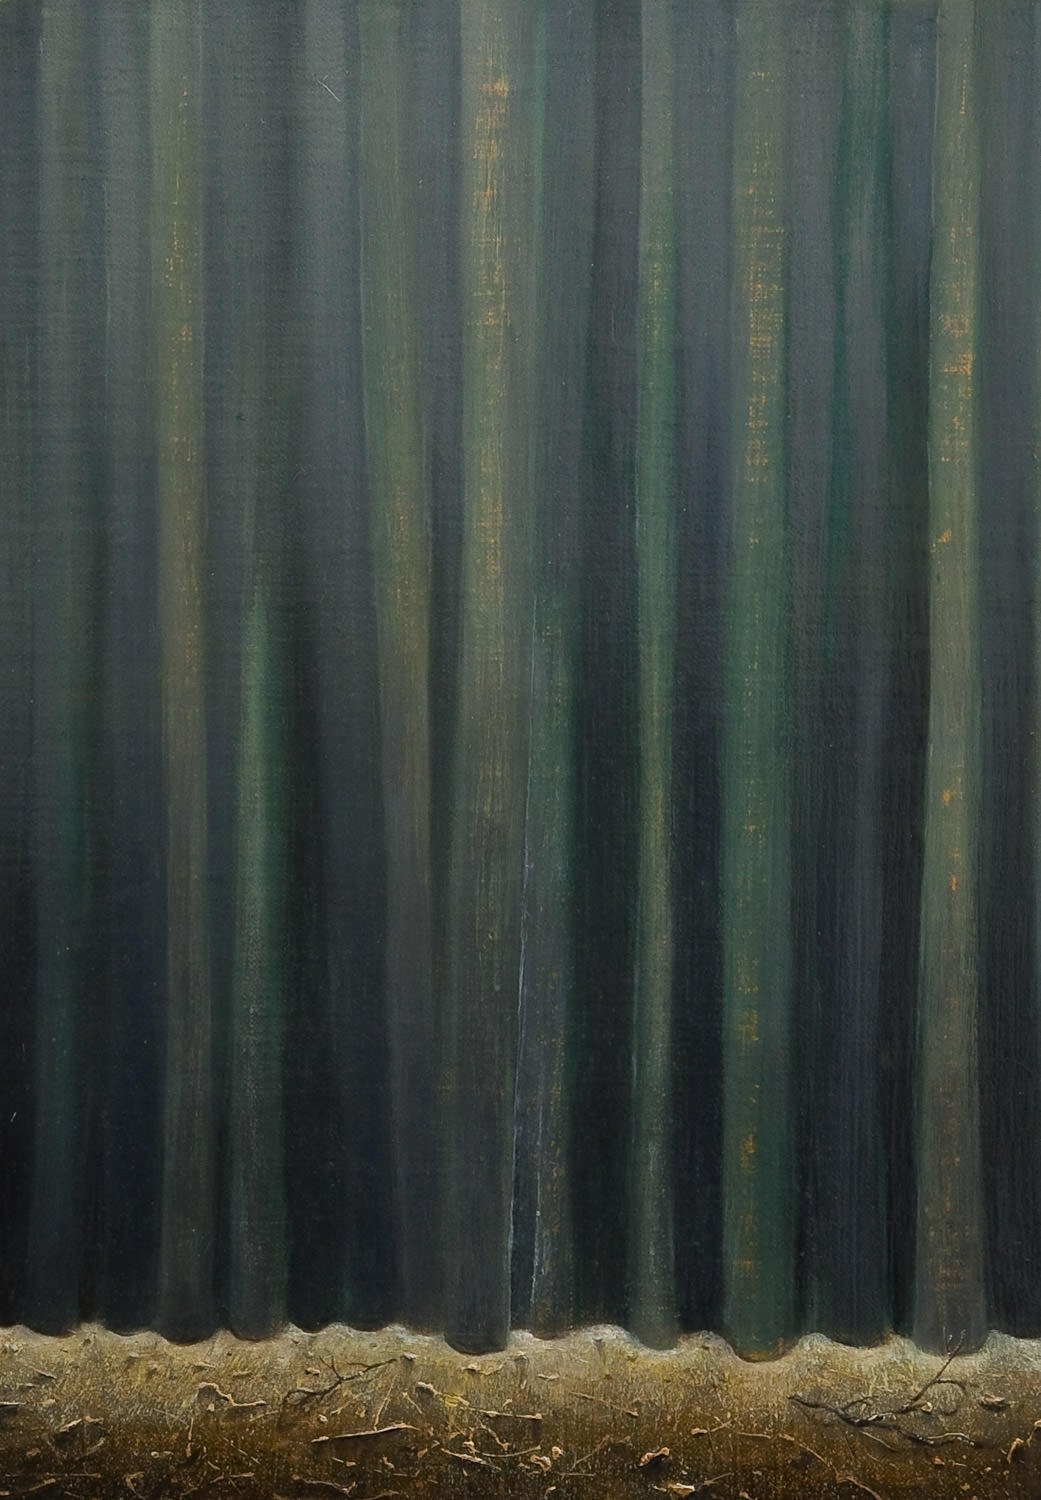 Curtains 2011, oil on canvas